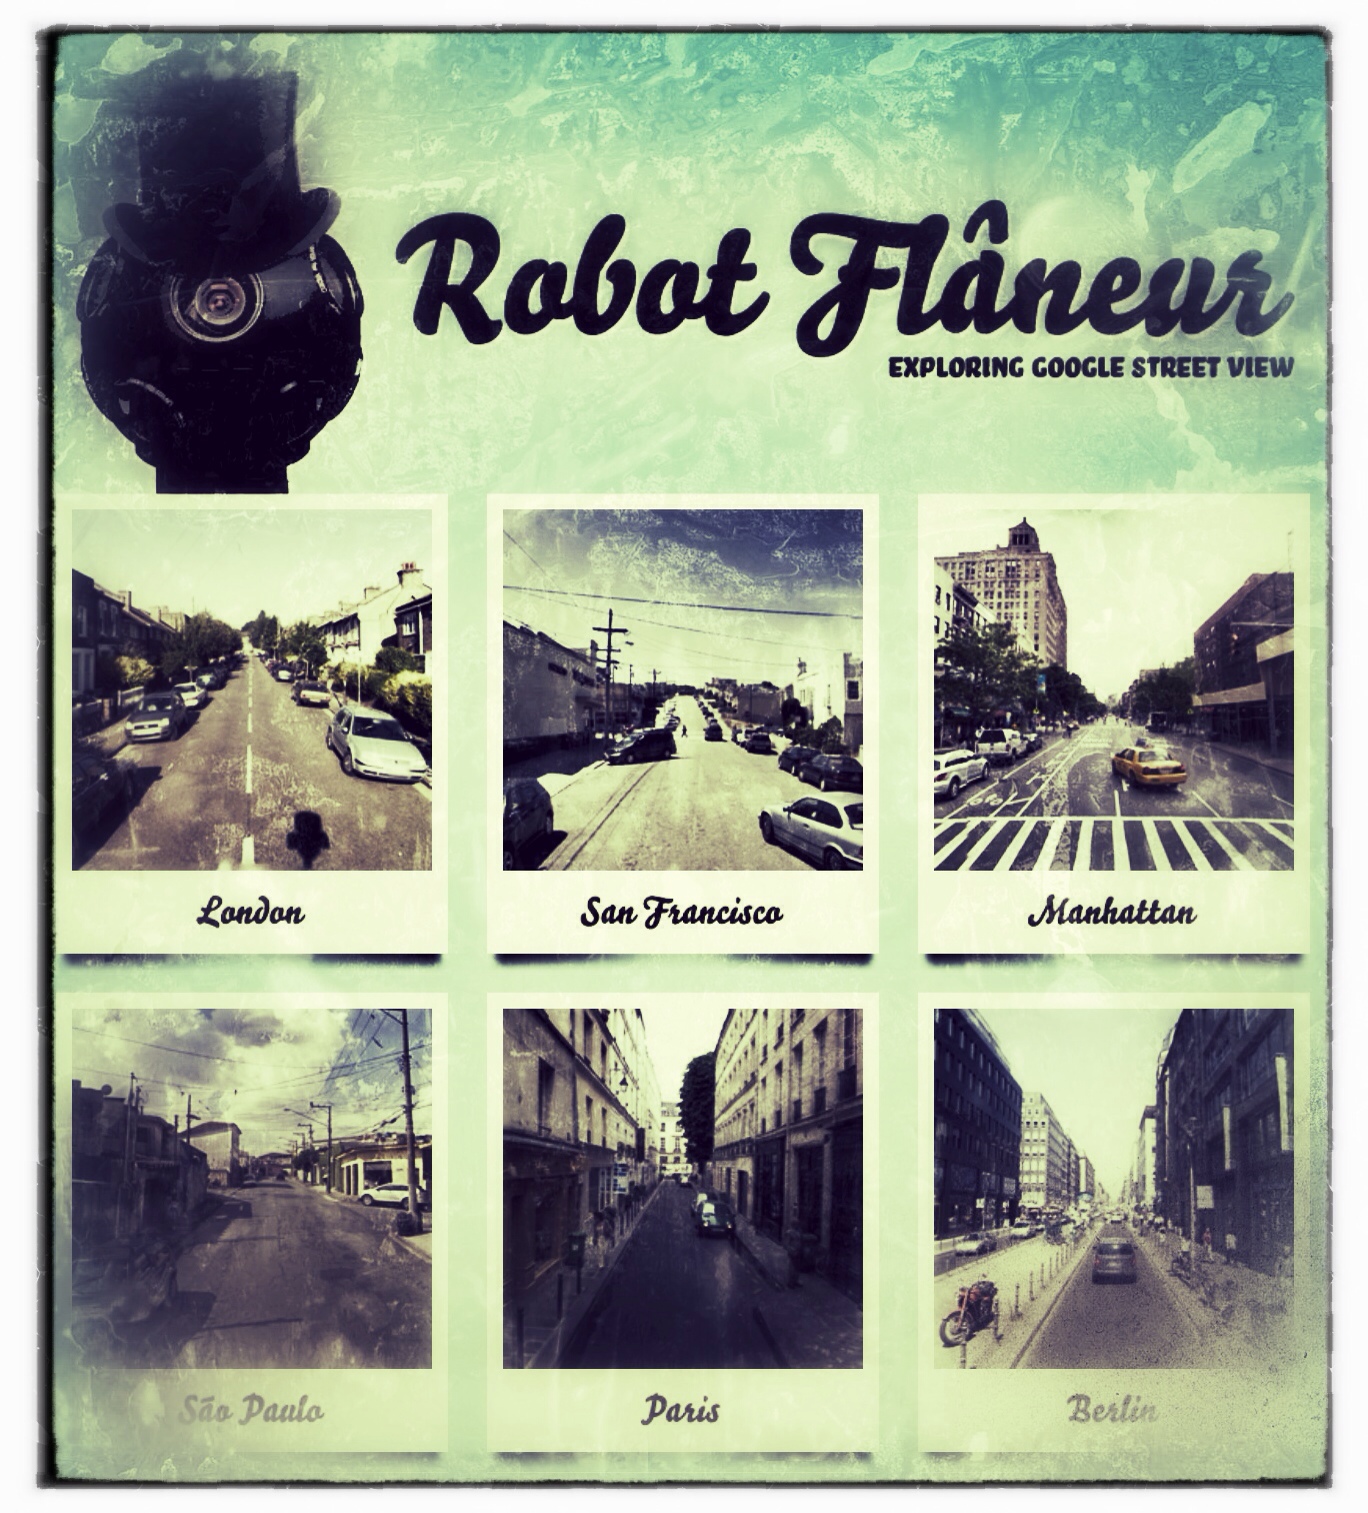 Robot Flâneur, a Google Street View "explorer".